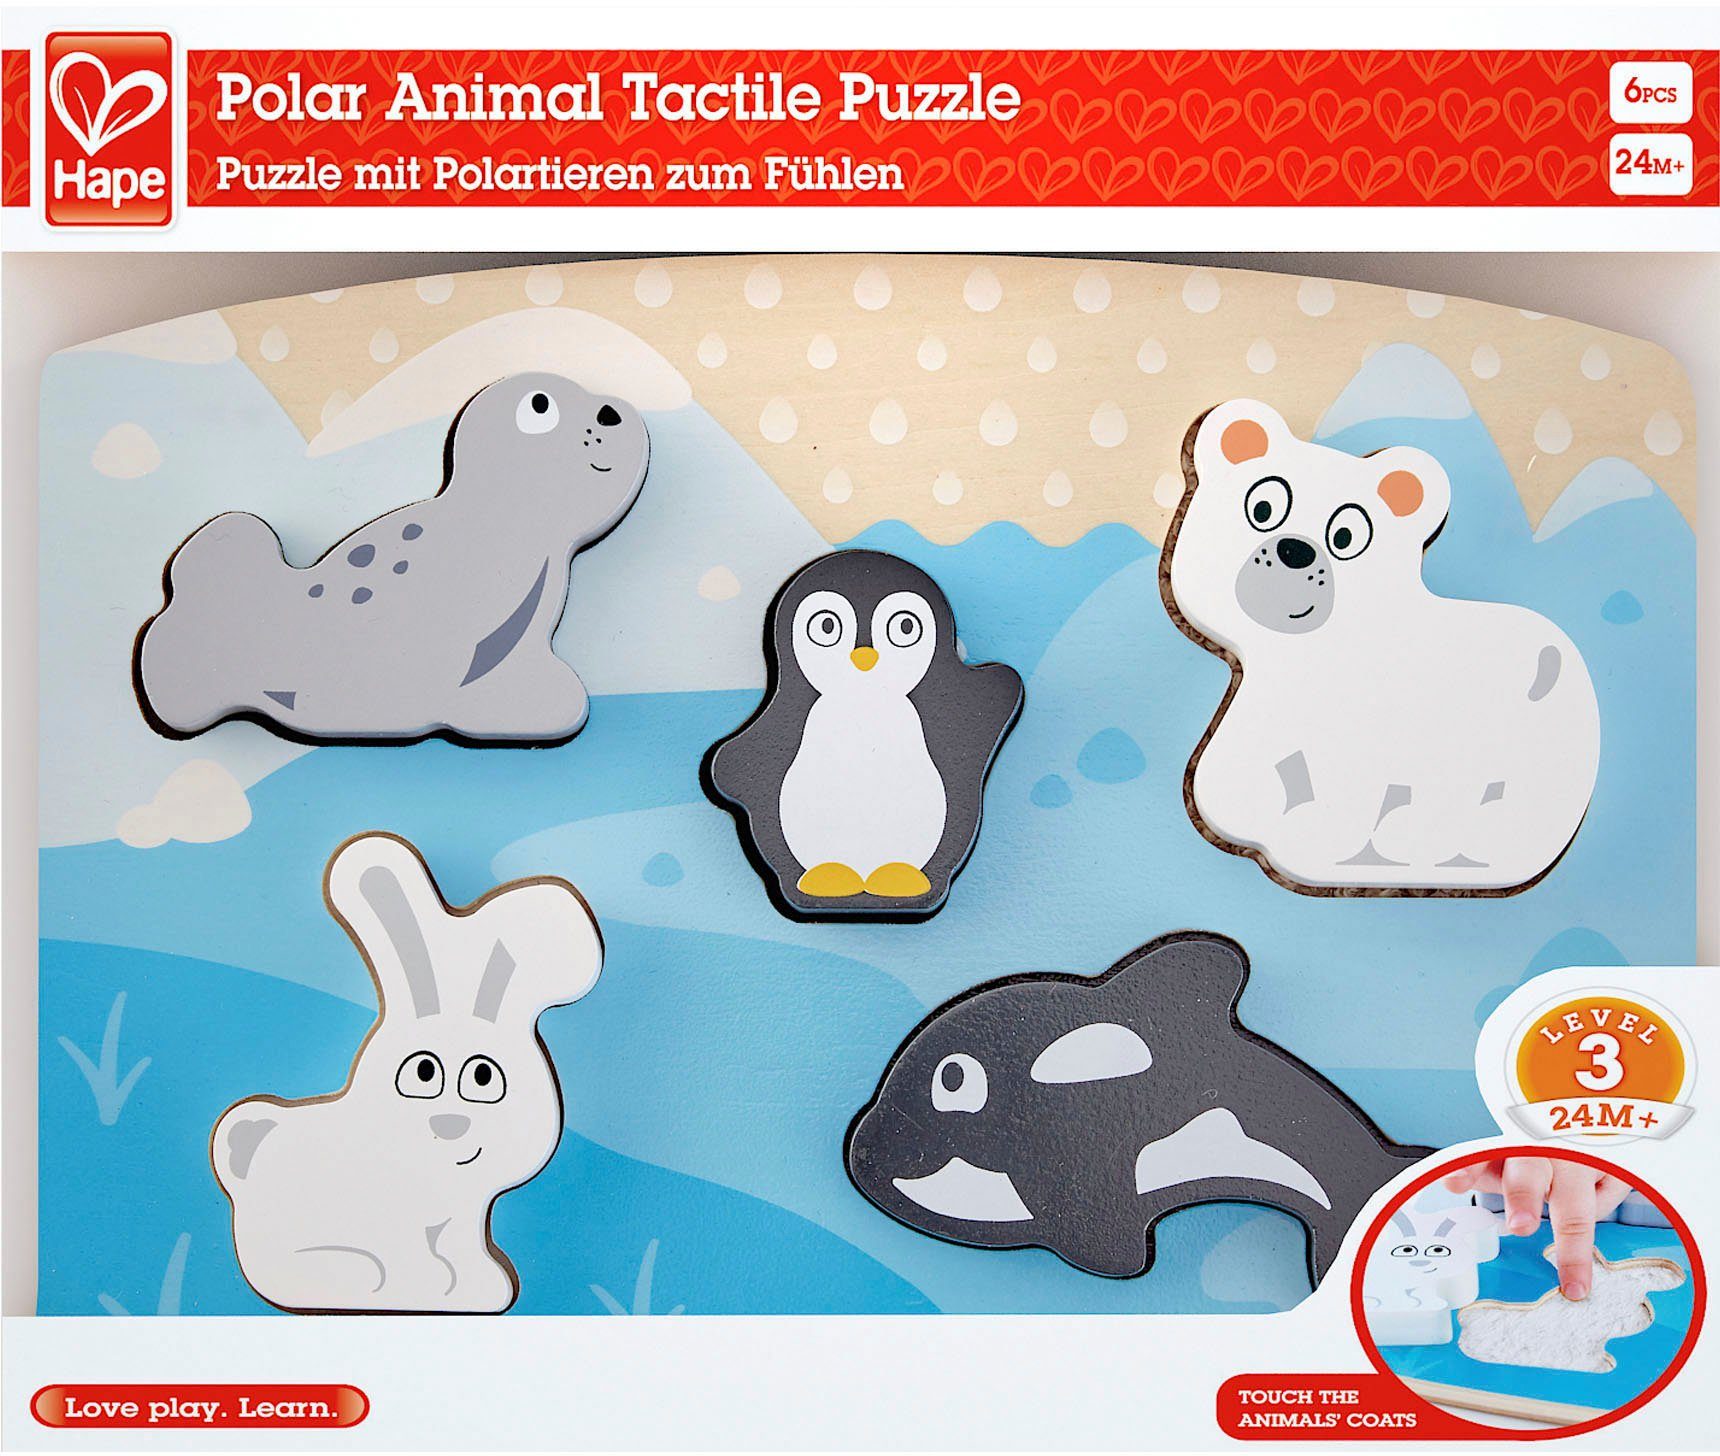 FSC®- Puzzleteile, Polartiere - Hape weltweit Steckpuzzle Fühlpuzzle, Wald schützt 5